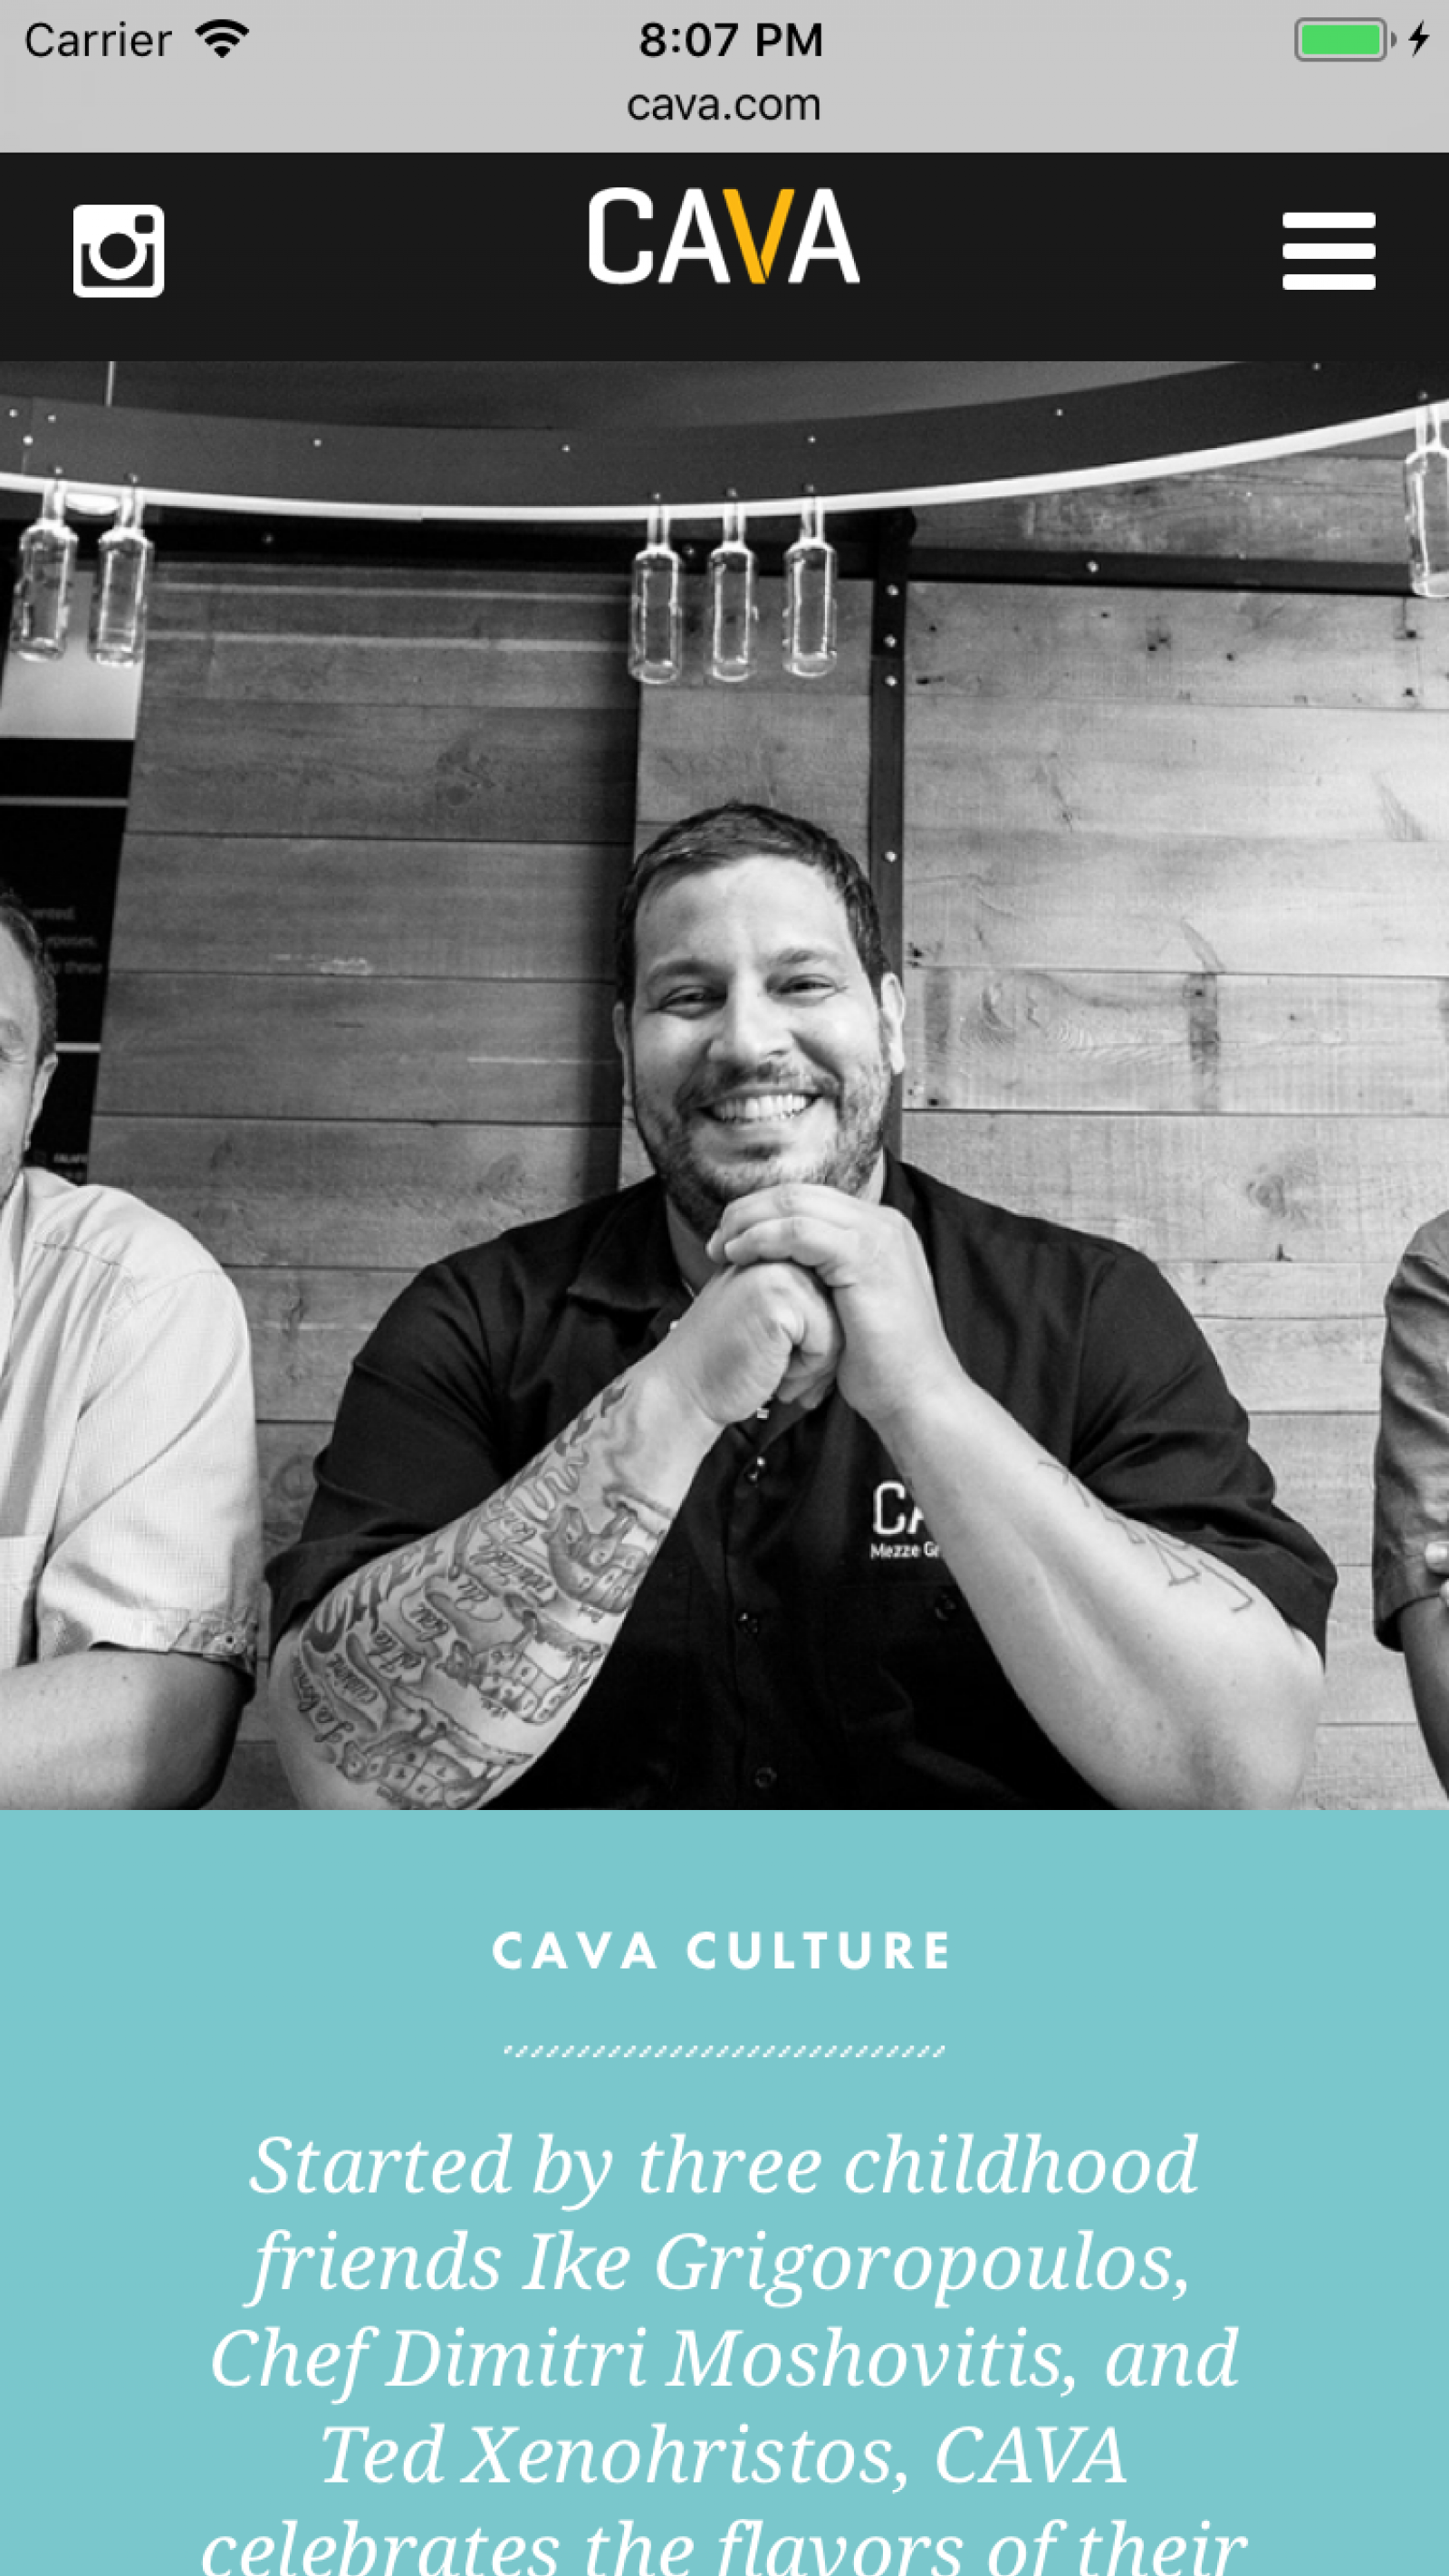 Cava culture on mobile